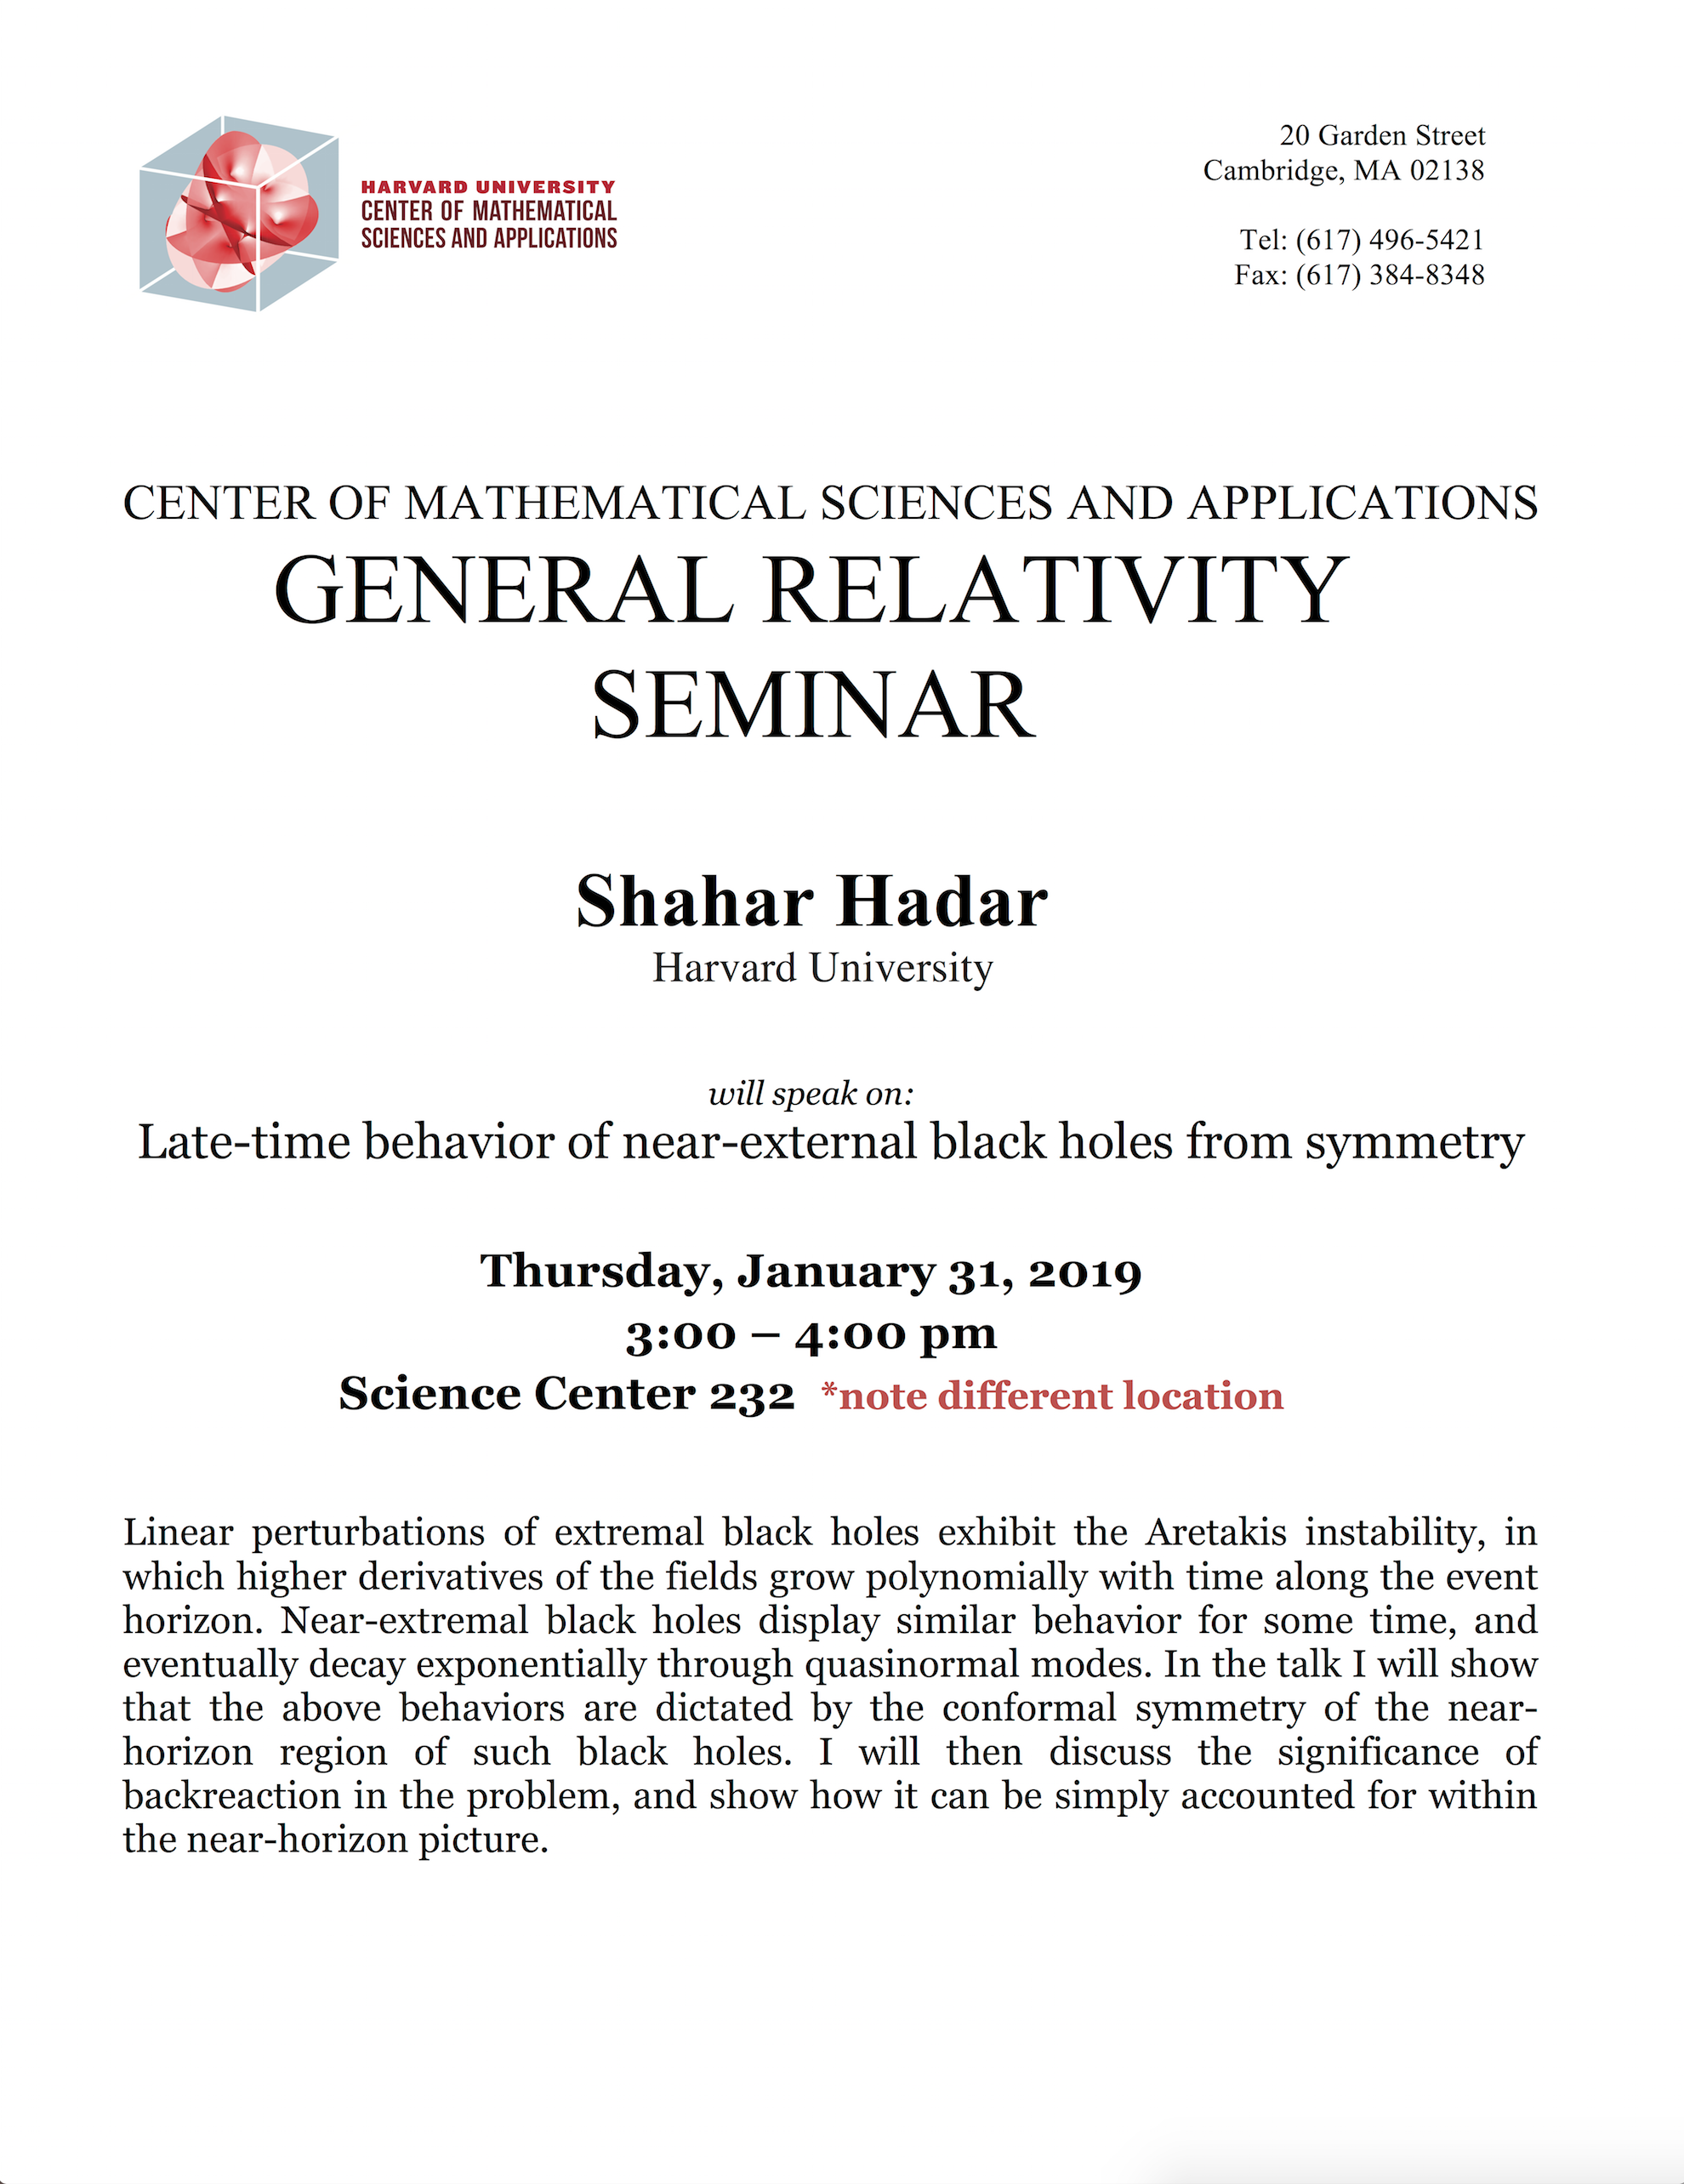 1/31/2019 General Relativity Seminar